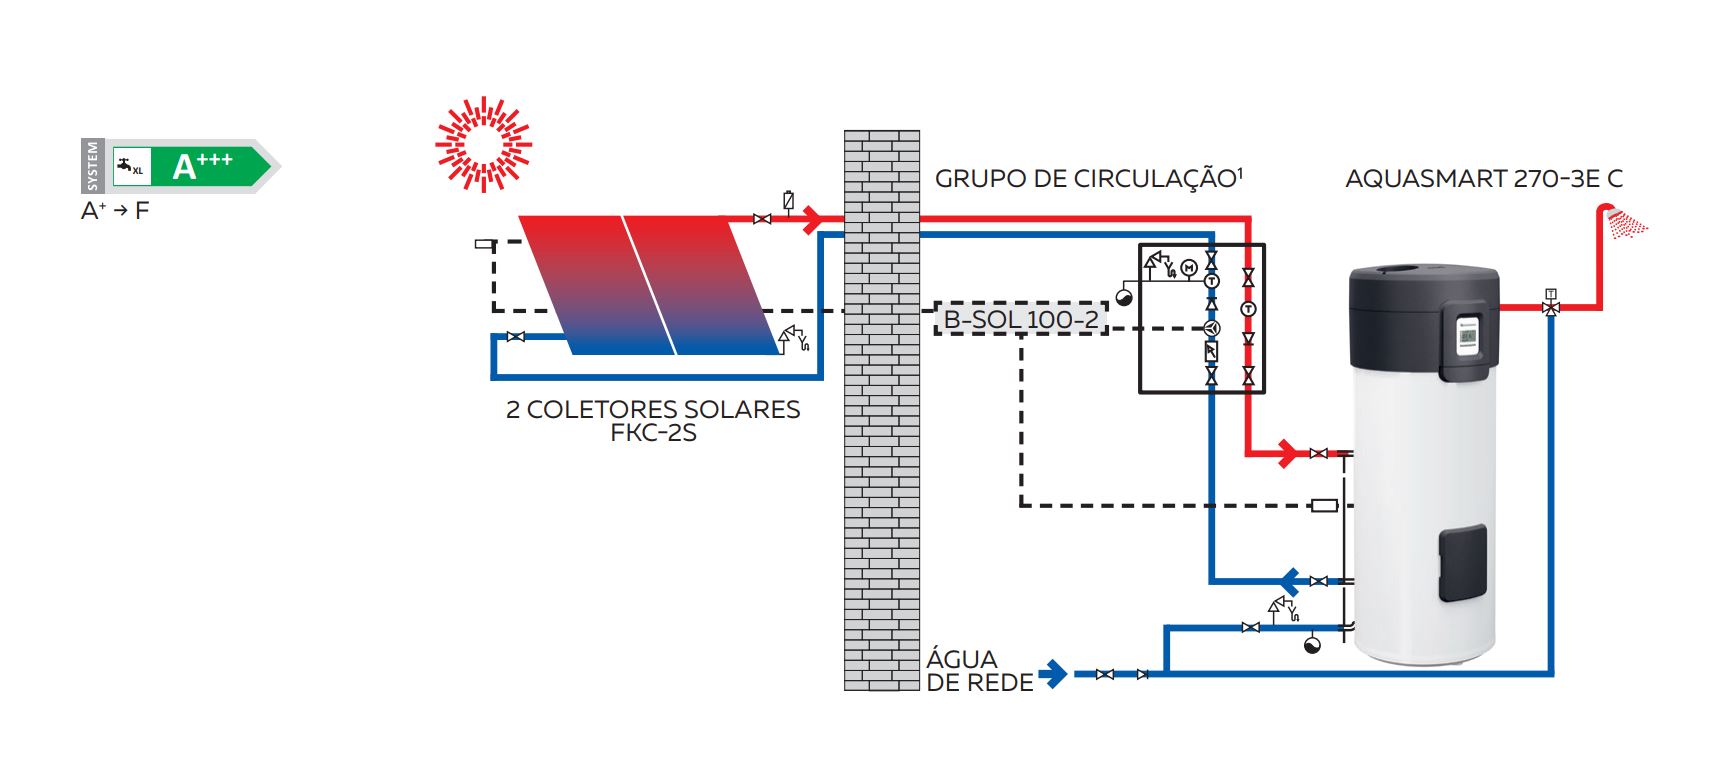 Exemplo de instalao de sistema solar trmico com bomba de calor como sistema de apoio. Fonte: Vulcano